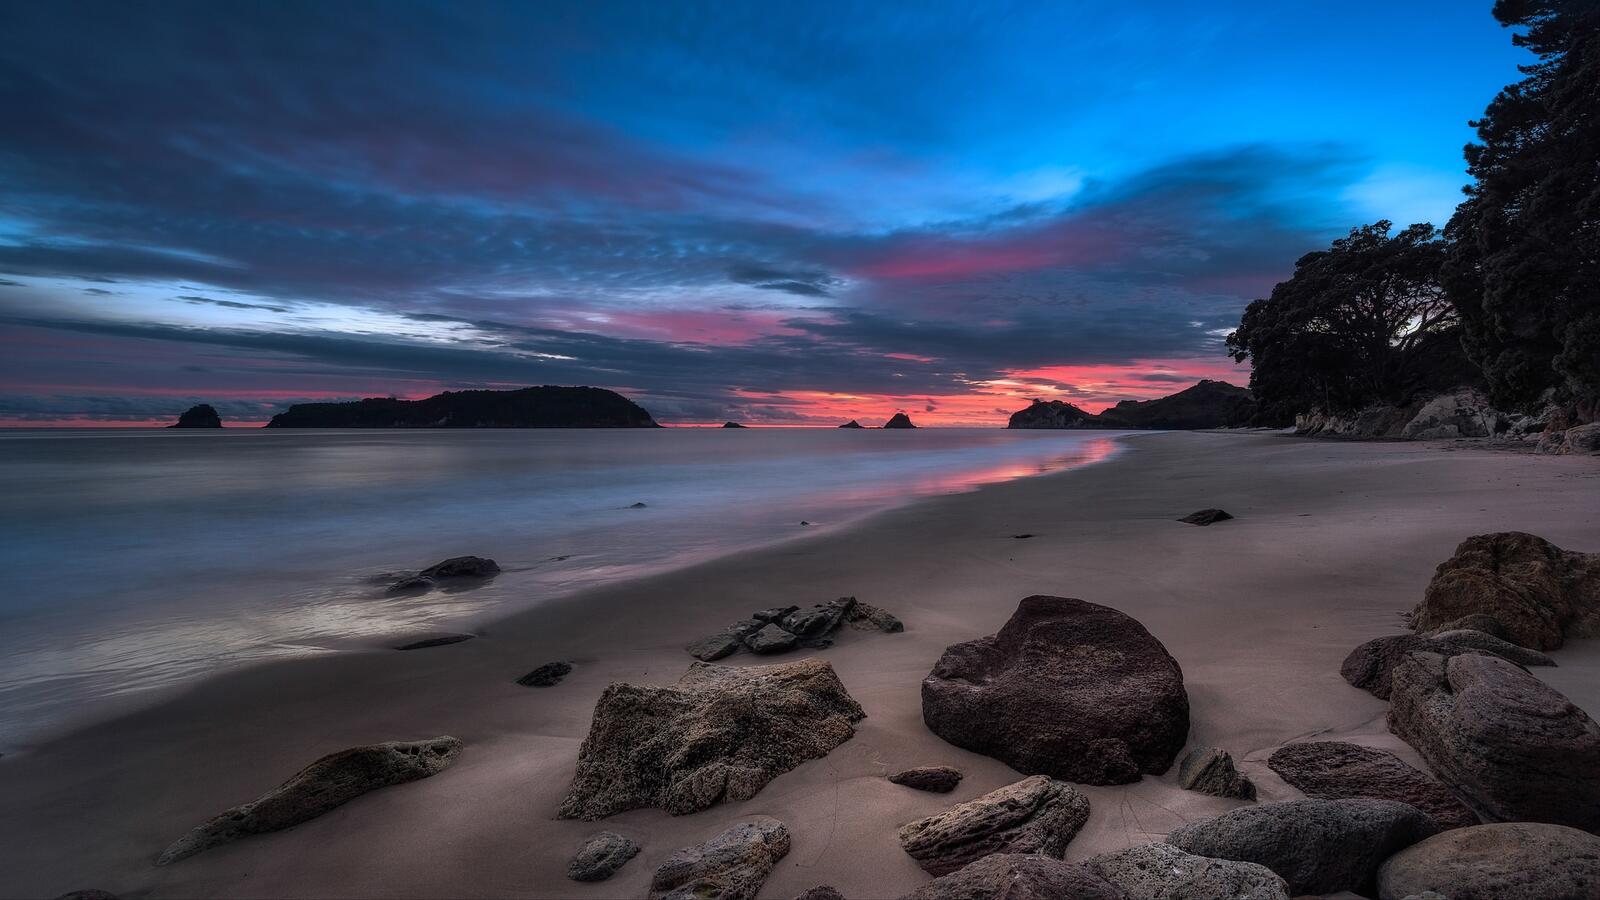 Бесплатное фото Спокойное море с песчаным пляжем